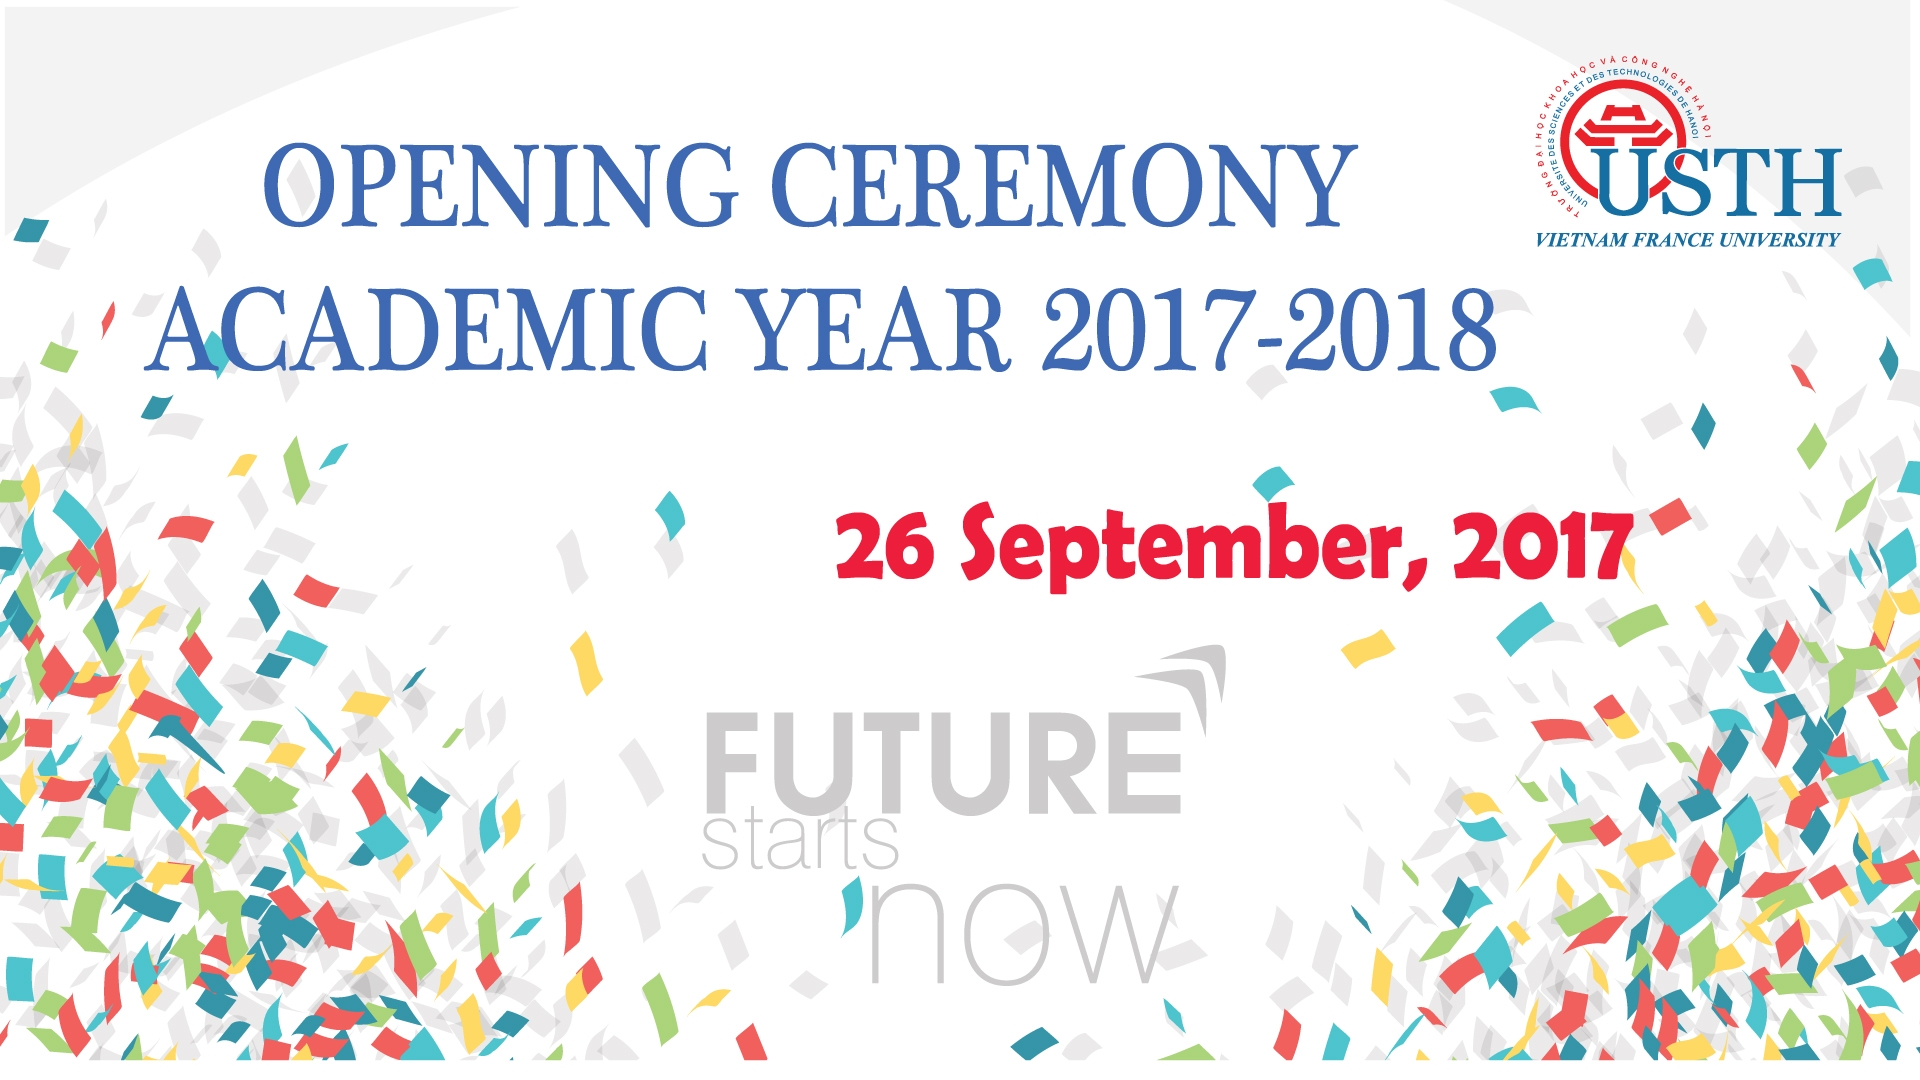 Opening Ceremony 2017 - 2018